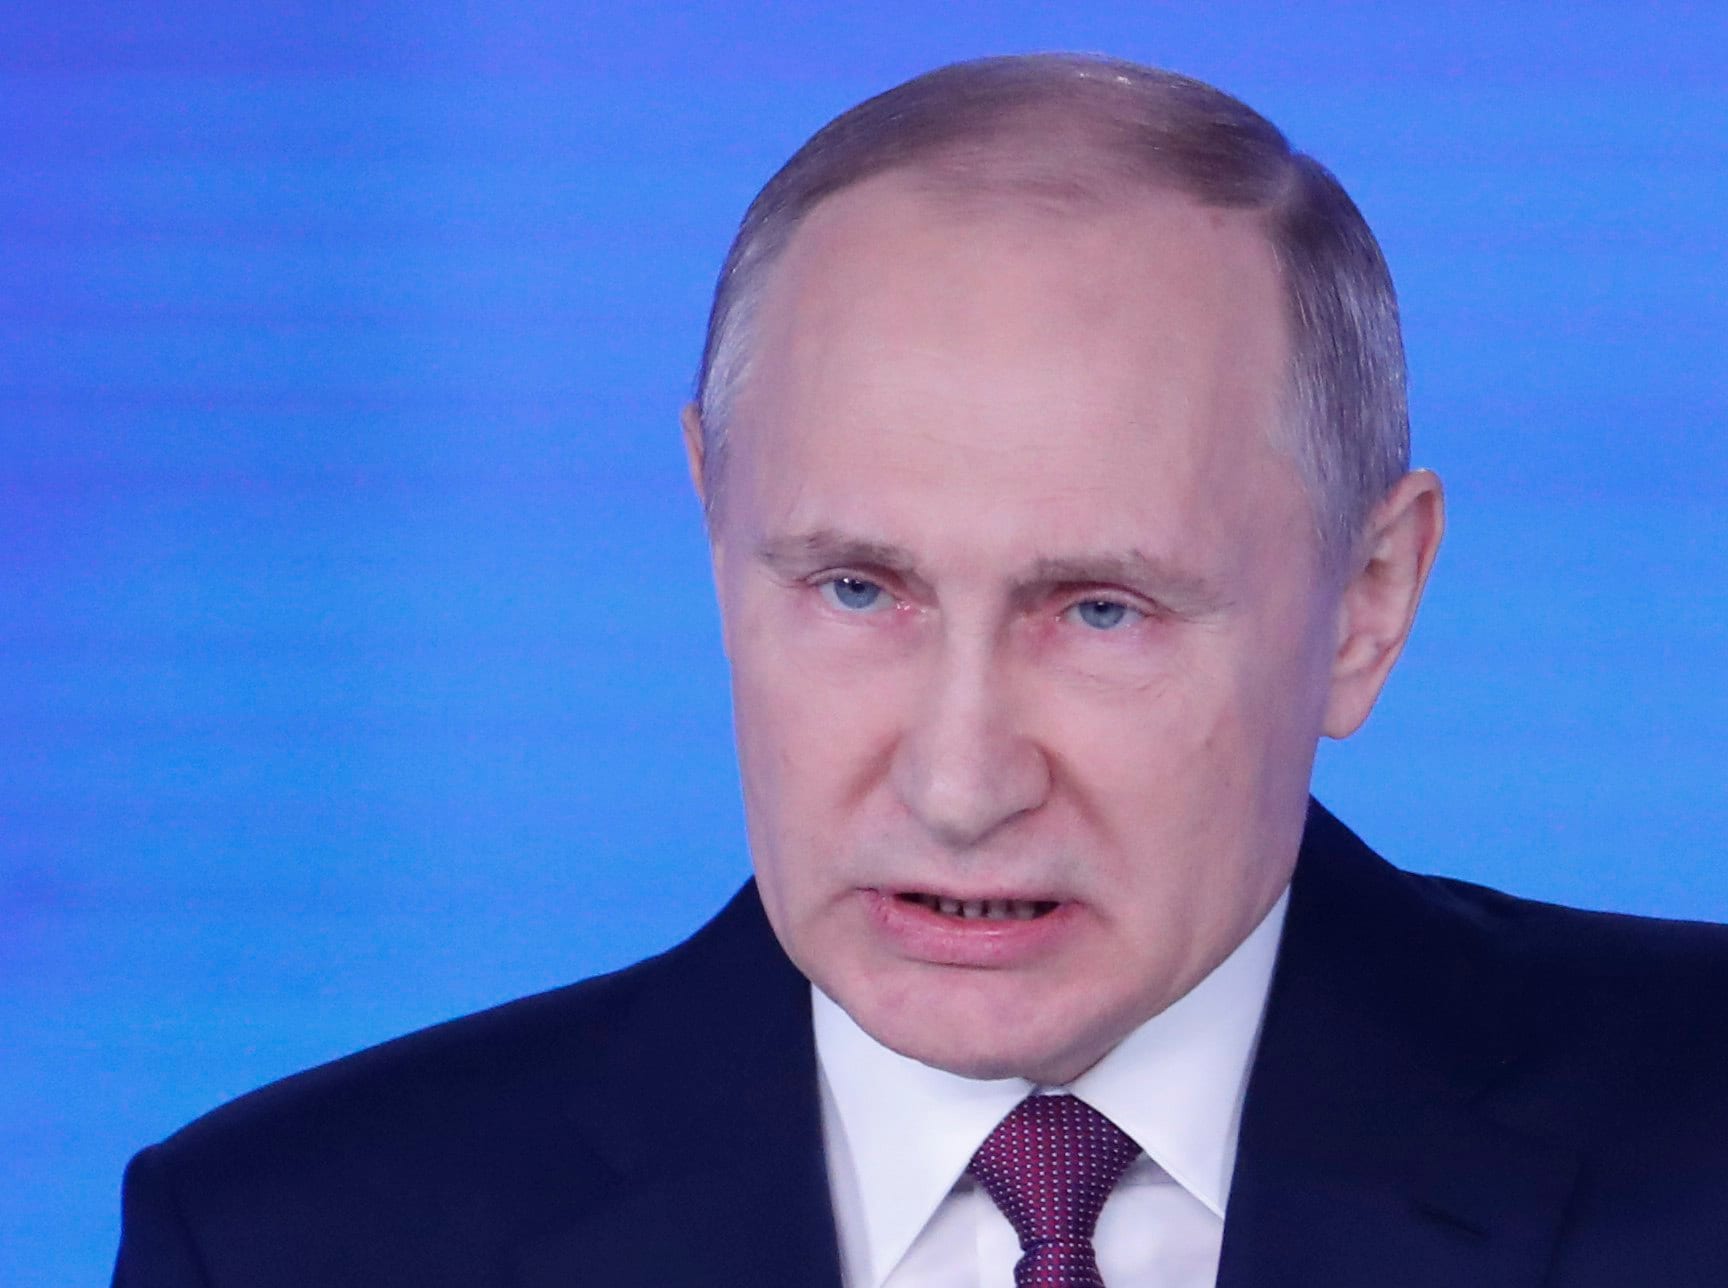 Poetin stelt nieuwe nucleaire raket voor: "Niemand wilde naar ons luisteren. Wel, luister nu maar"